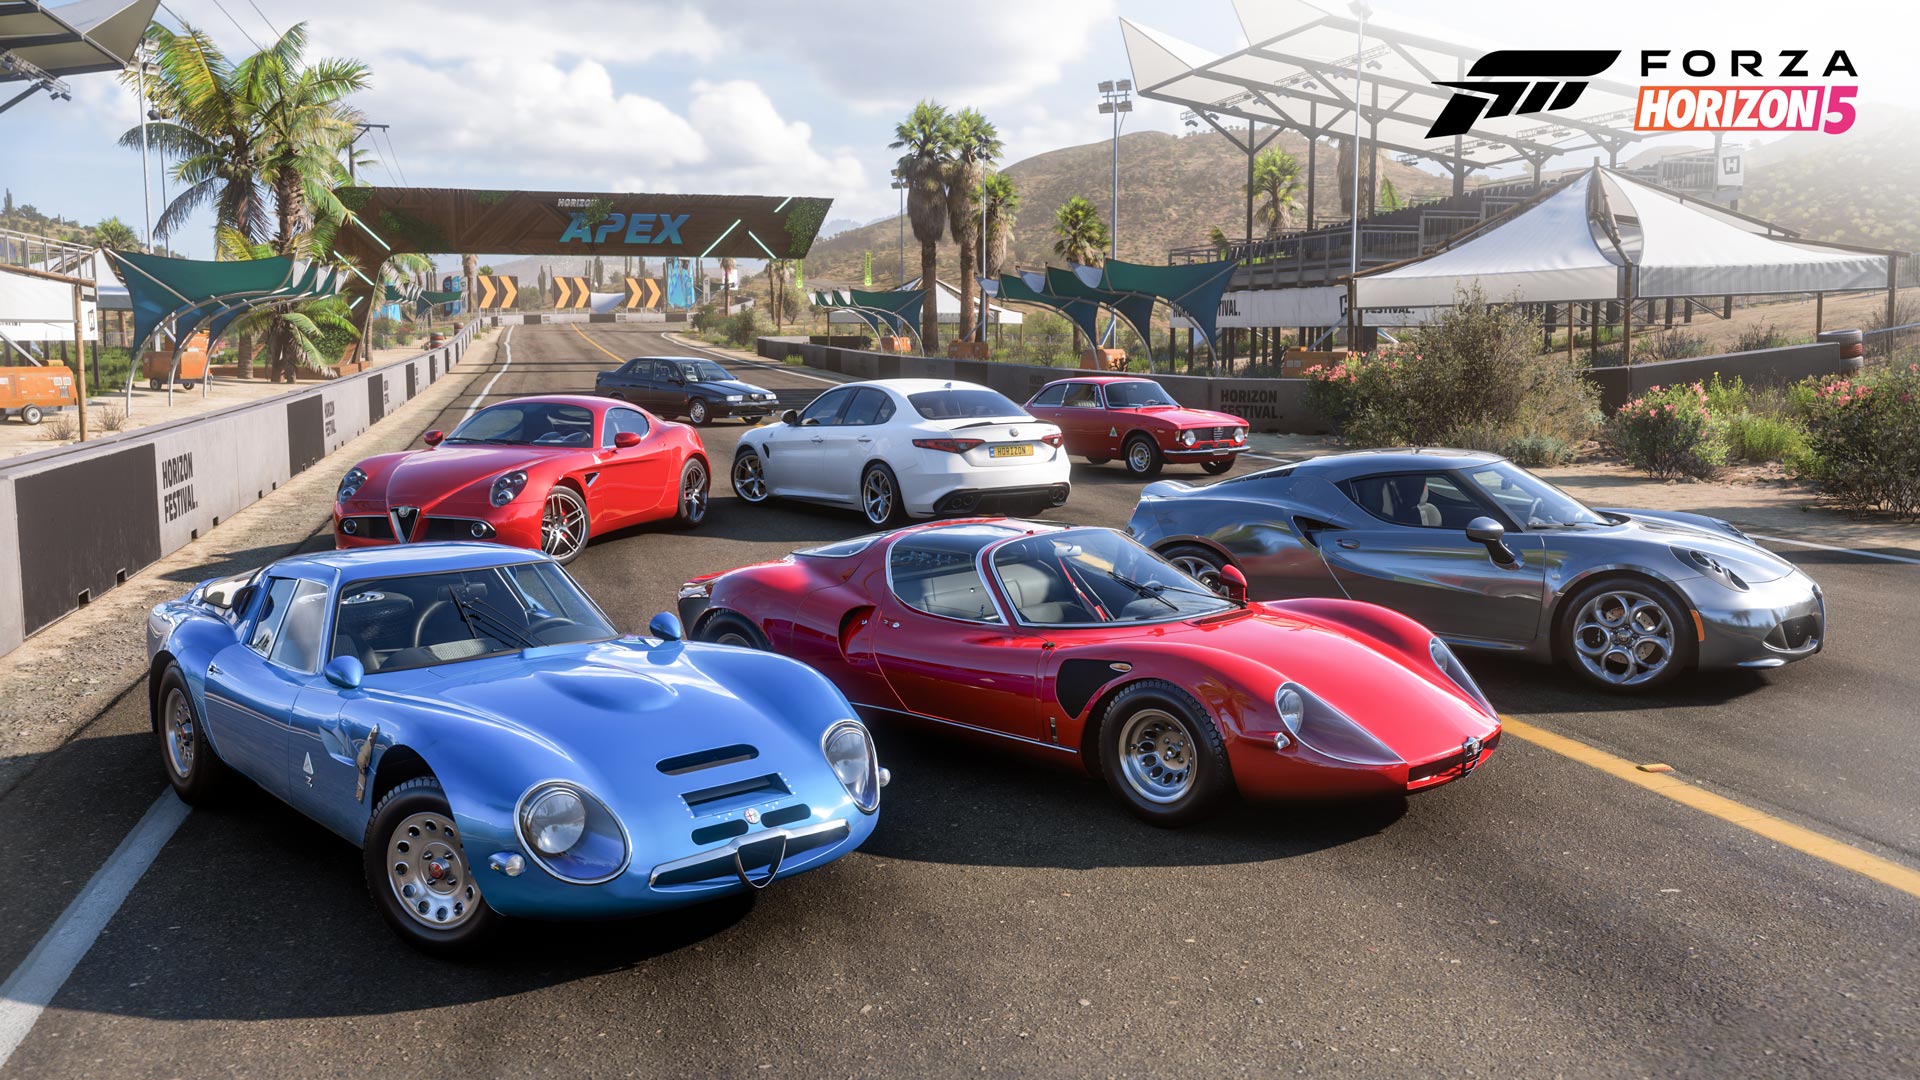 Откройте для себя итальянское автомобилестроение в Forza Horizon 5, крупнейшем в истории автомобилестроении